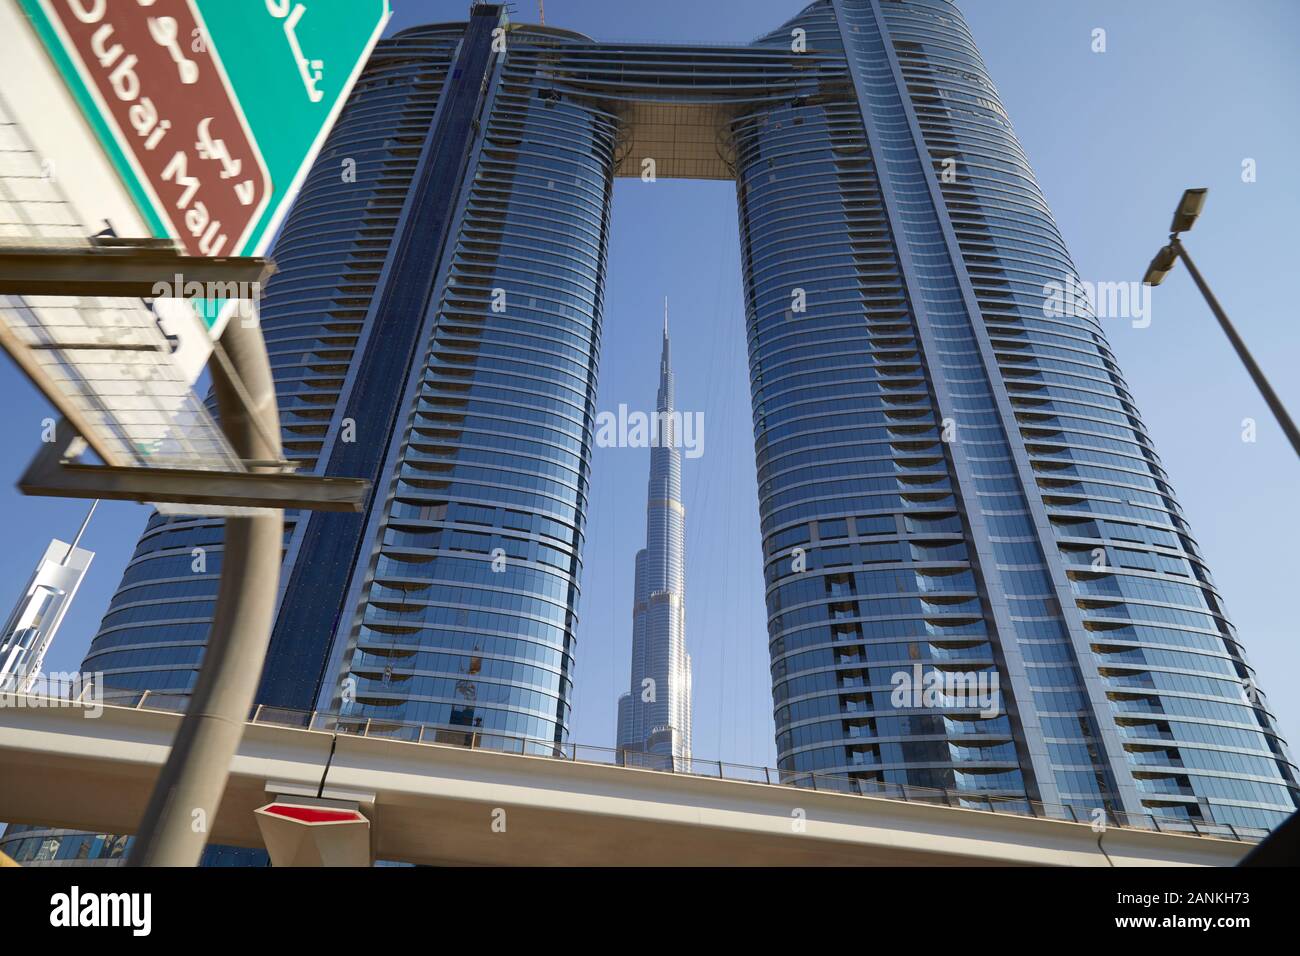 Dubaï, Émirats arabes unis - le 23 novembre 2019 : gratte-ciel Burj Khalifa et l'adresse de vue du ciel des tours dans une journée ensoleillée, low angle angle view Banque D'Images